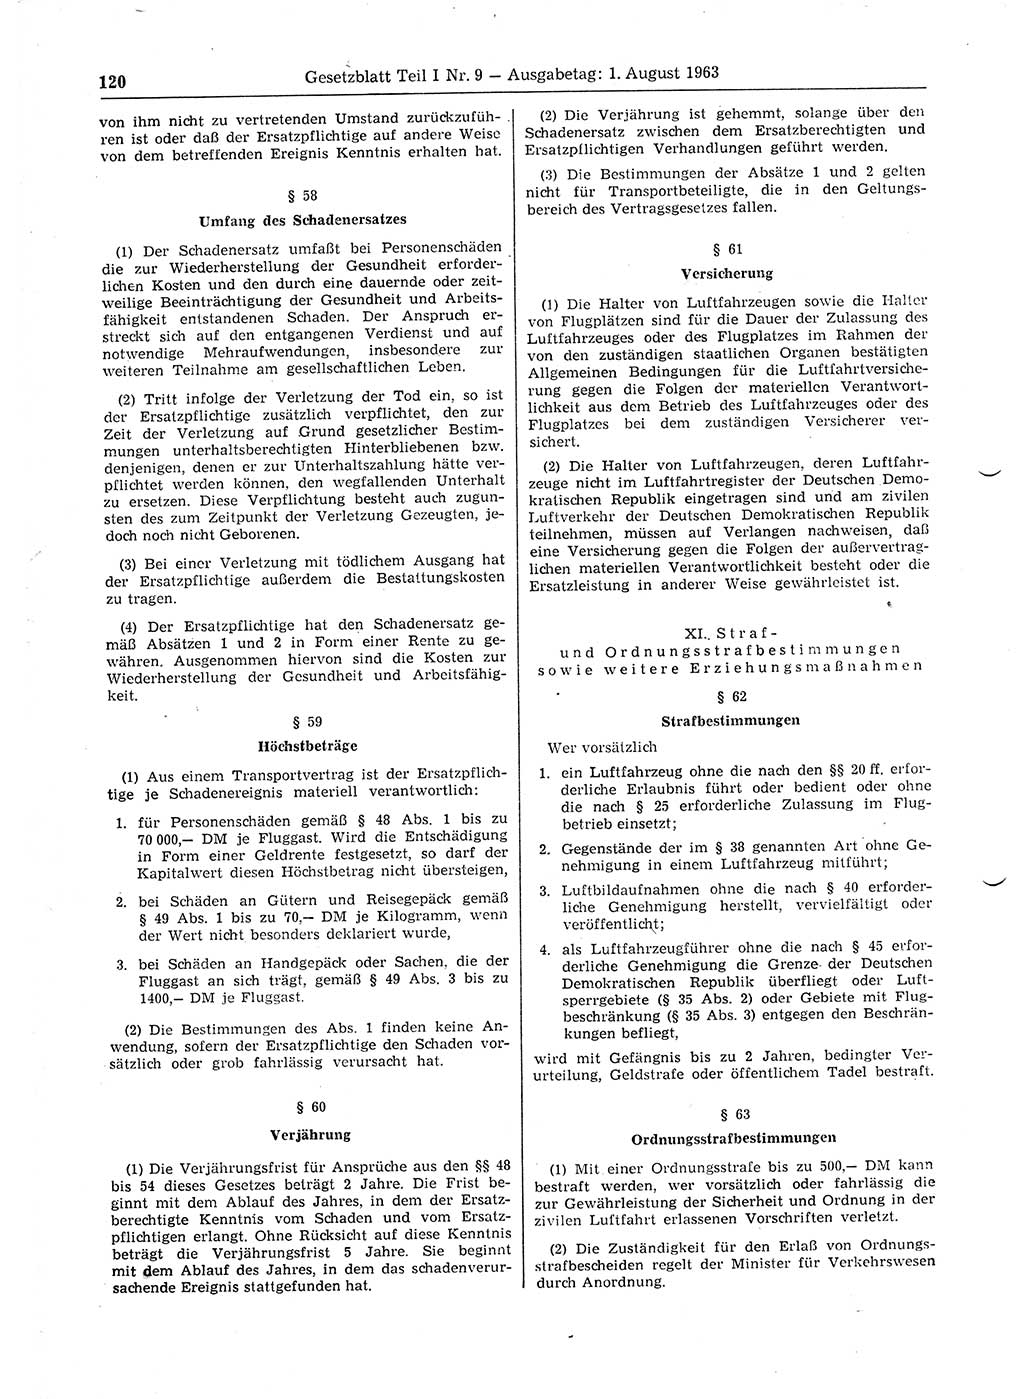 Gesetzblatt (GBl.) der Deutschen Demokratischen Republik (DDR) Teil Ⅰ 1963, Seite 120 (GBl. DDR Ⅰ 1963, S. 120)